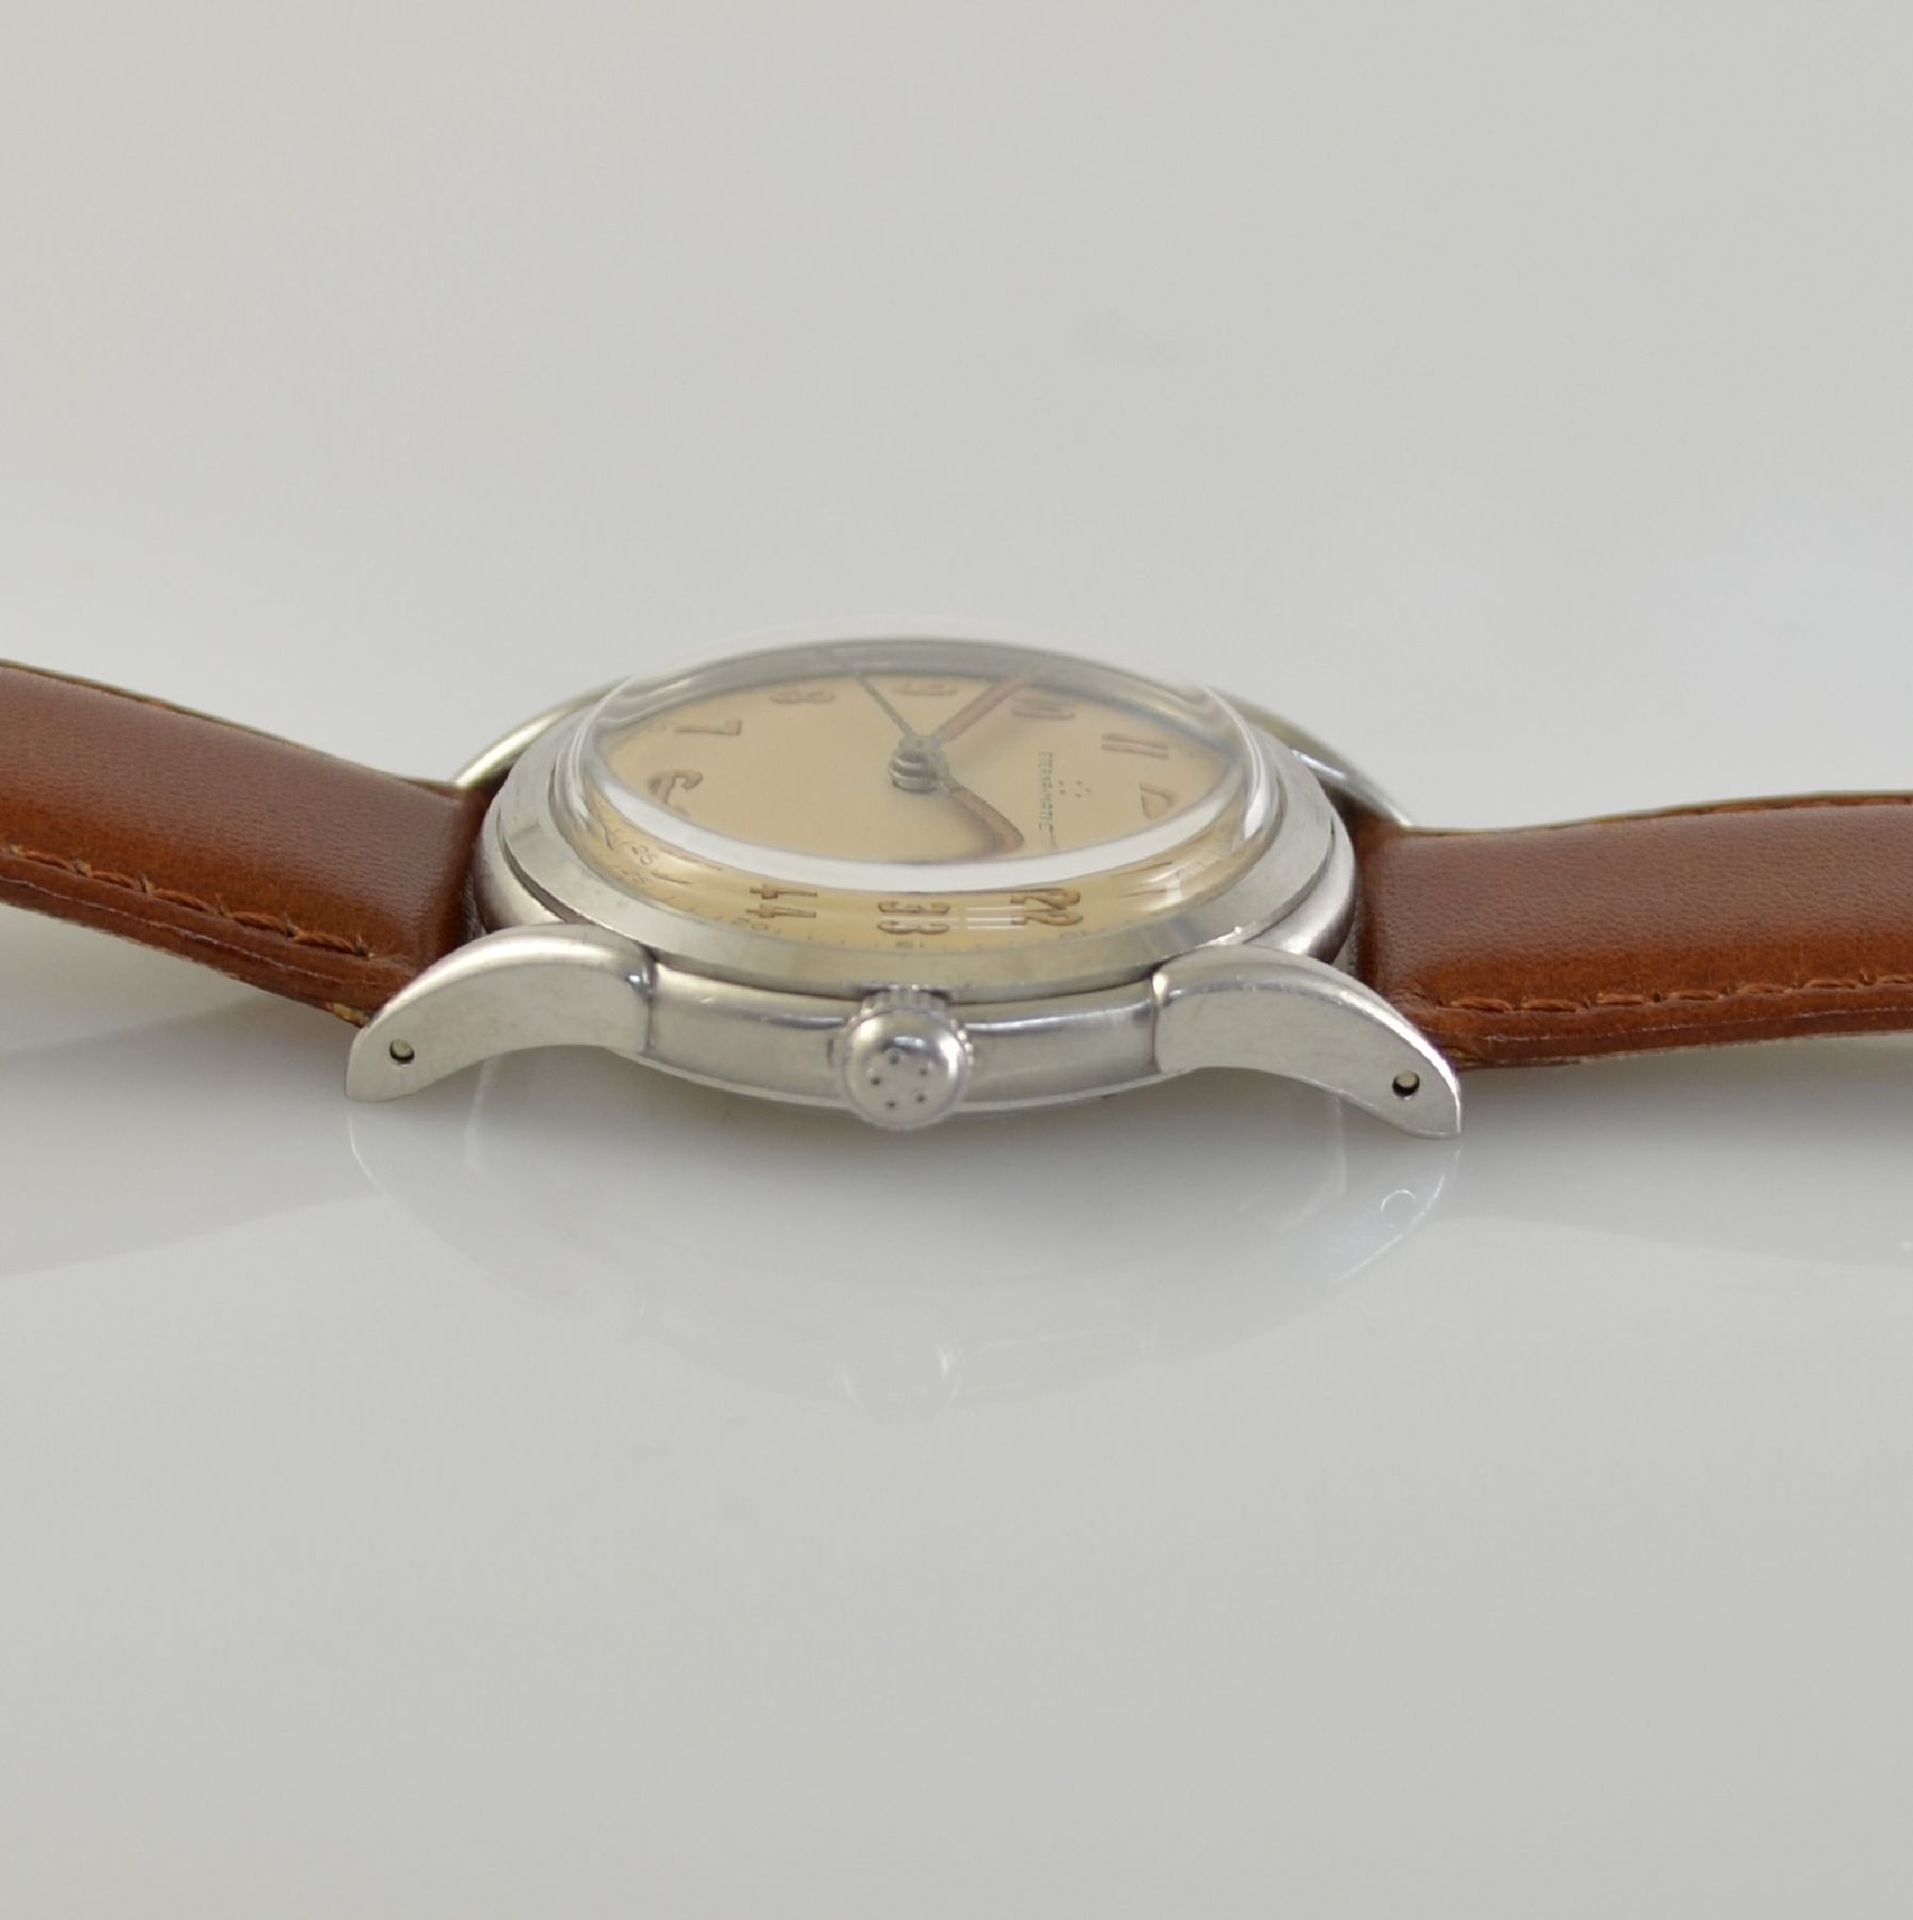 ETERNA-MATIC 2 wristwatches in steel, Switzerland around 1950, screwed down cases with unusual lugs, - Bild 3 aus 13